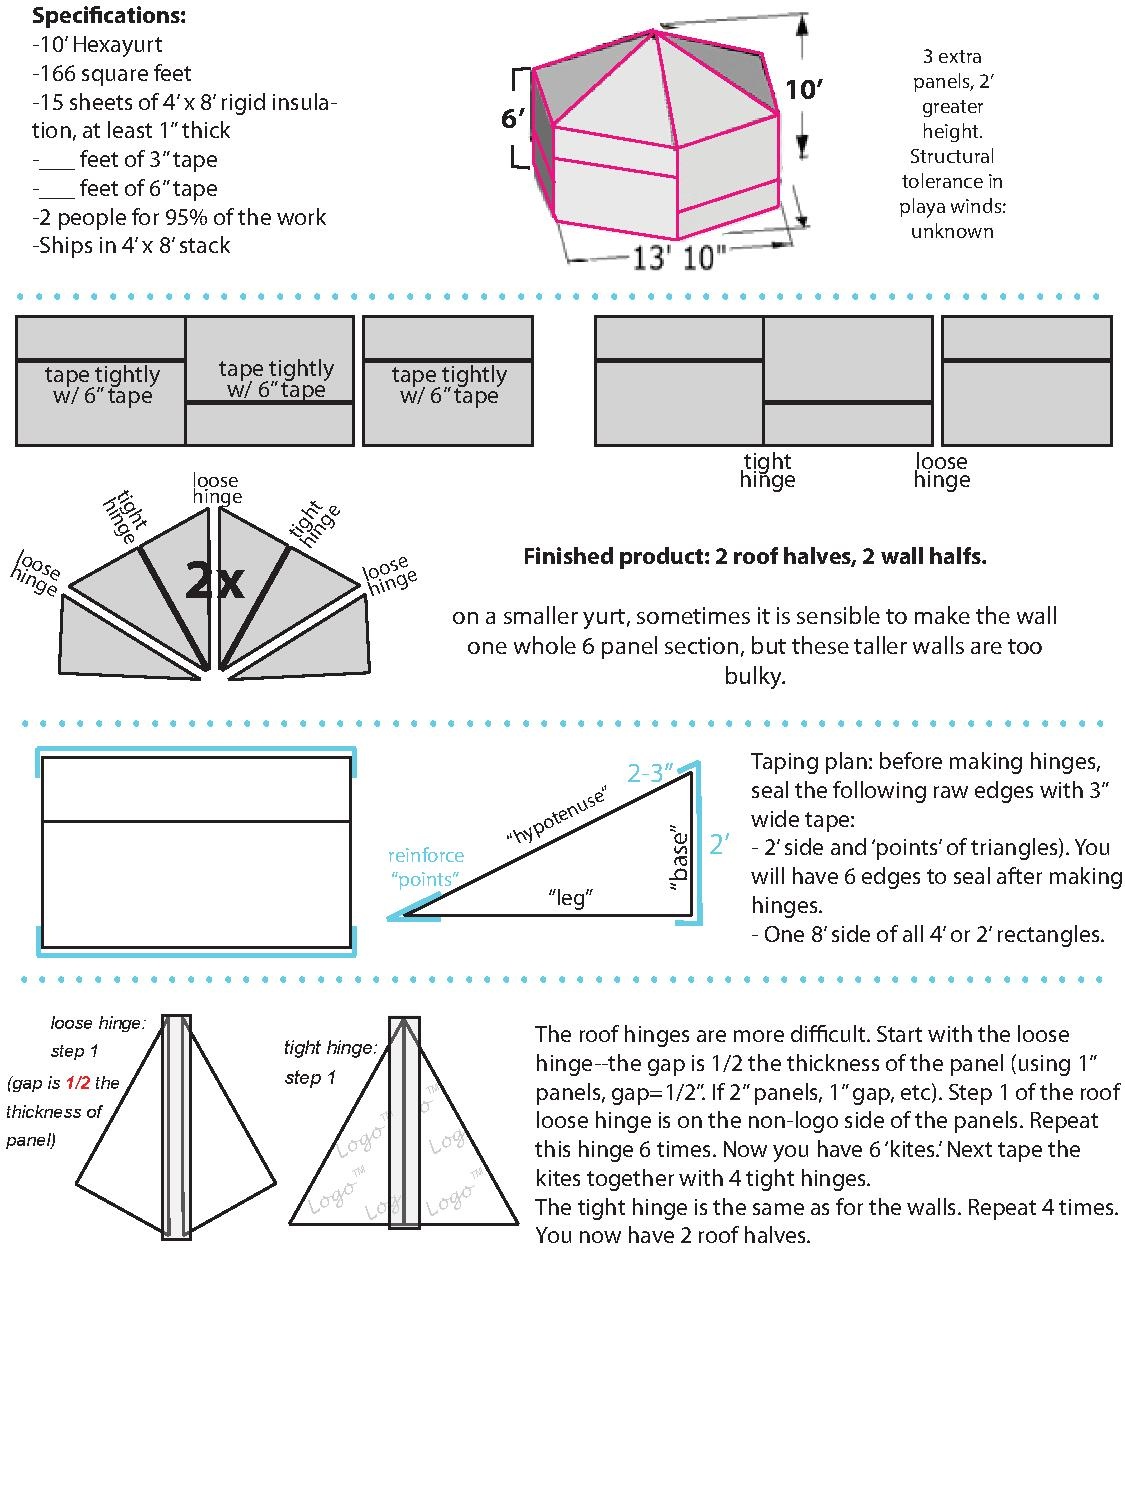 6x8 H15 Hexayurt instructional.pdf